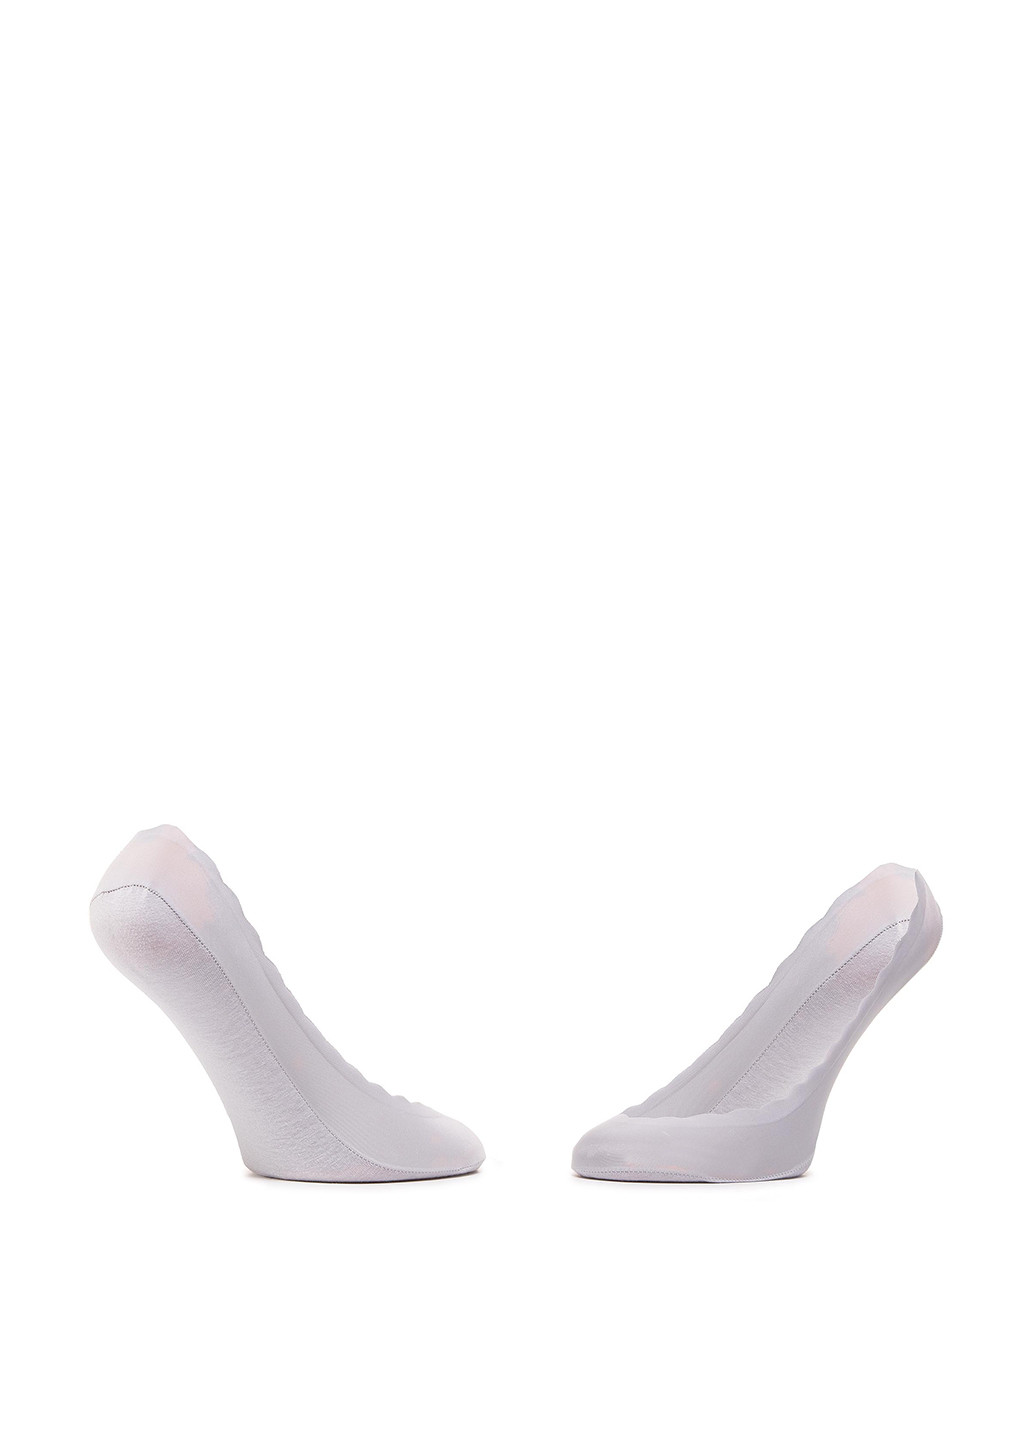 Шкарпетки жіночі 1WB-002-SS21 Accessories однотонные комбинированные повседневные